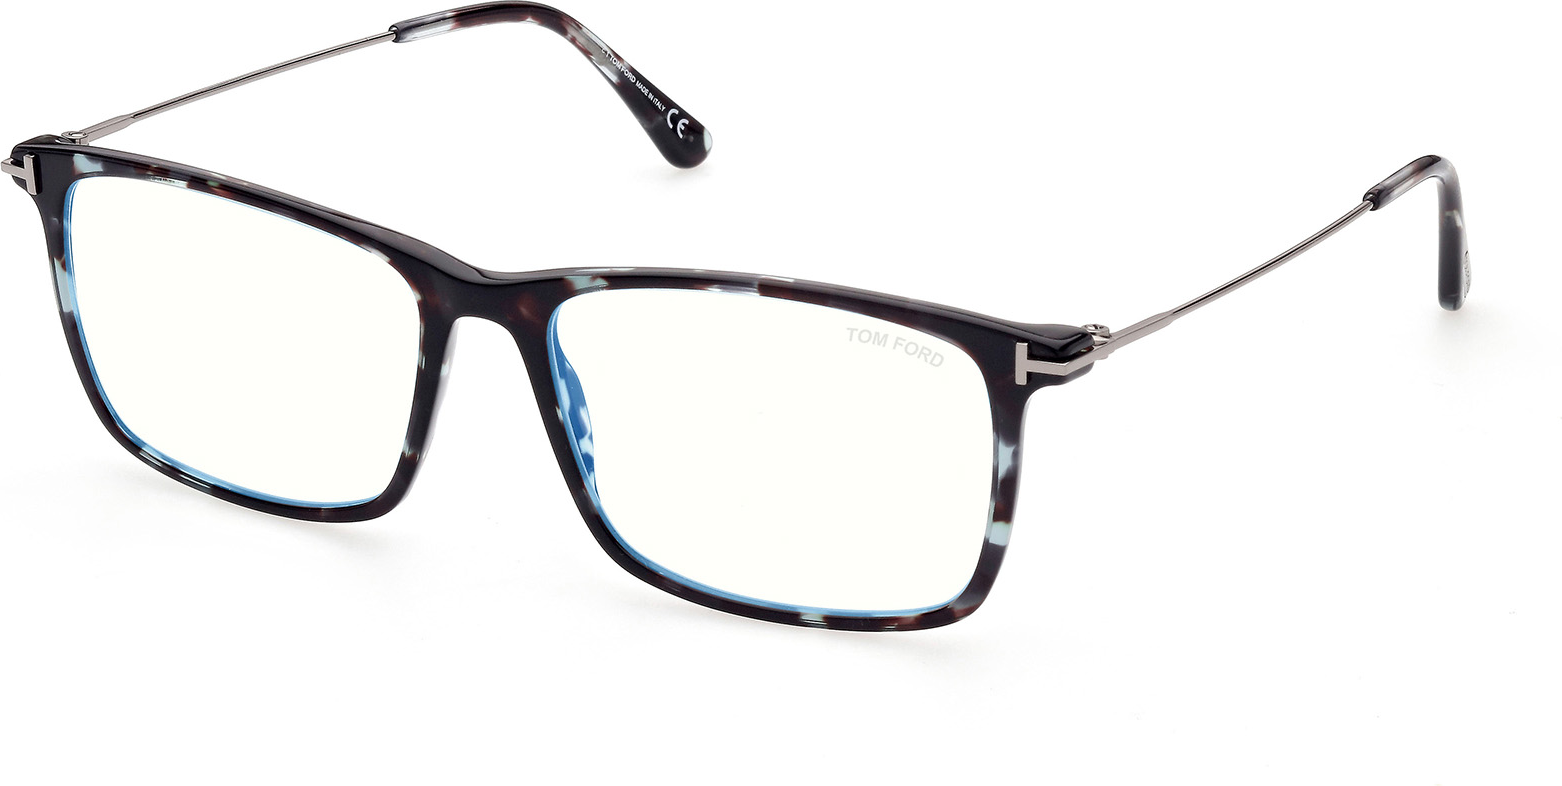 Eyeglasses Tom Ford Optical FT5758-B - OnlyLens